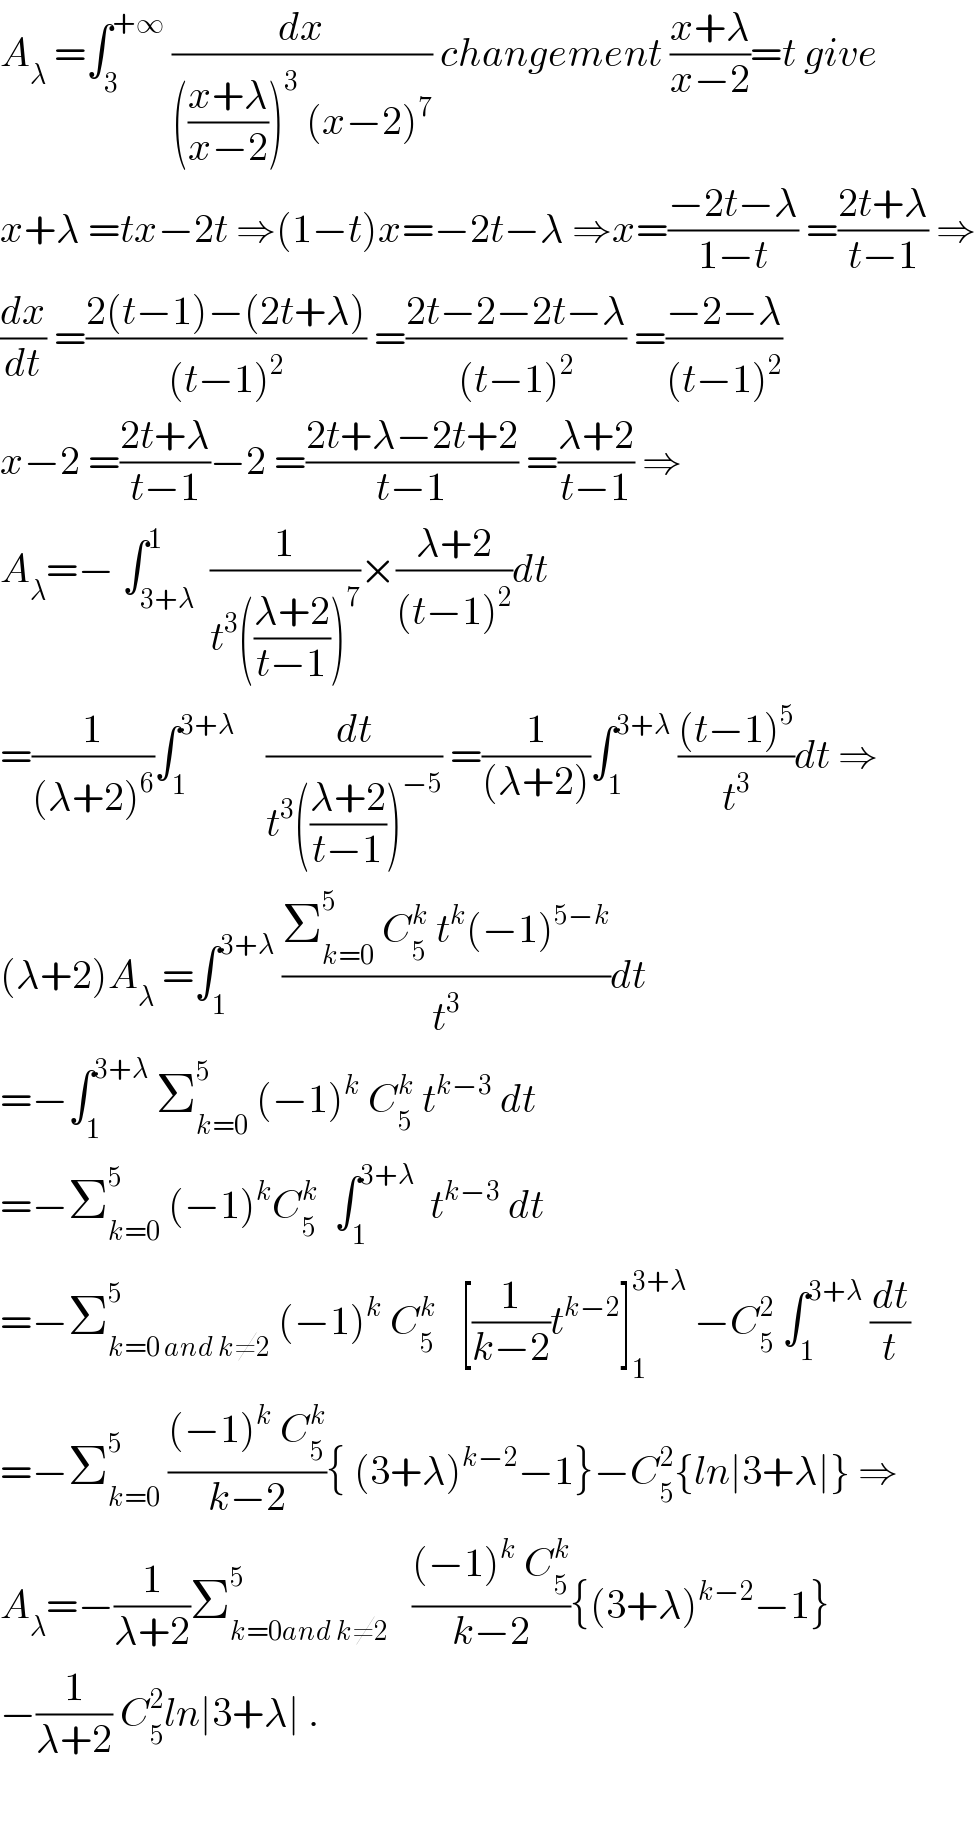 A_λ  =∫_3 ^(+∞)  (dx/((((x+λ)/(x−2)))^3  (x−2)^7 )) changement ((x+λ)/(x−2))=t give  x+λ =tx−2t ⇒(1−t)x=−2t−λ ⇒x=((−2t−λ)/(1−t)) =((2t+λ)/(t−1)) ⇒  (dx/dt) =((2(t−1)−(2t+λ))/((t−1)^2 )) =((2t−2−2t−λ)/((t−1)^2 )) =((−2−λ)/((t−1)^2 ))  x−2 =((2t+λ)/(t−1))−2 =((2t+λ−2t+2)/(t−1)) =((λ+2)/(t−1)) ⇒  A_λ =− ∫_(3+λ) ^1  (1/(t^3 (((λ+2)/(t−1)))^7 ))×((λ+2)/((t−1)^2 ))dt  =(1/((λ+2)^6 ))∫_1 ^(3+λ)     (dt/(t^3 (((λ+2)/(t−1)))^(−5) )) =(1/((λ+2)))∫_1 ^(3+λ)  (((t−1)^5 )/t^3 )dt ⇒  (λ+2)A_λ  =∫_1 ^(3+λ)  ((Σ_(k=0) ^5  C_5 ^k  t^k (−1)^(5−k) )/t^3 )dt  =−∫_1 ^(3+λ)  Σ_(k=0) ^5  (−1)^k  C_5 ^k  t^(k−3)  dt  =−Σ_(k=0) ^5  (−1)^k C_5 ^k   ∫_1 ^(3+λ)   t^(k−3)  dt  =−Σ_(k=0 and k≠2) ^5  (−1)^k  C_5 ^k    [(1/(k−2))t^(k−2) ]_1 ^(3+λ)  −C_5 ^2  ∫_1 ^(3+λ)  (dt/t)  =−Σ_(k=0) ^5  (((−1)^k  C_5 ^k )/(k−2)){ (3+λ)^(k−2) −1}−C_5 ^2 {ln∣3+λ∣} ⇒  A_λ =−(1/(λ+2))Σ_(k=0and k≠2) ^5    (((−1)^k  C_5 ^k )/(k−2)){(3+λ)^(k−2) −1}  −(1/(λ+2)) C_5 ^2 ln∣3+λ∣ .    